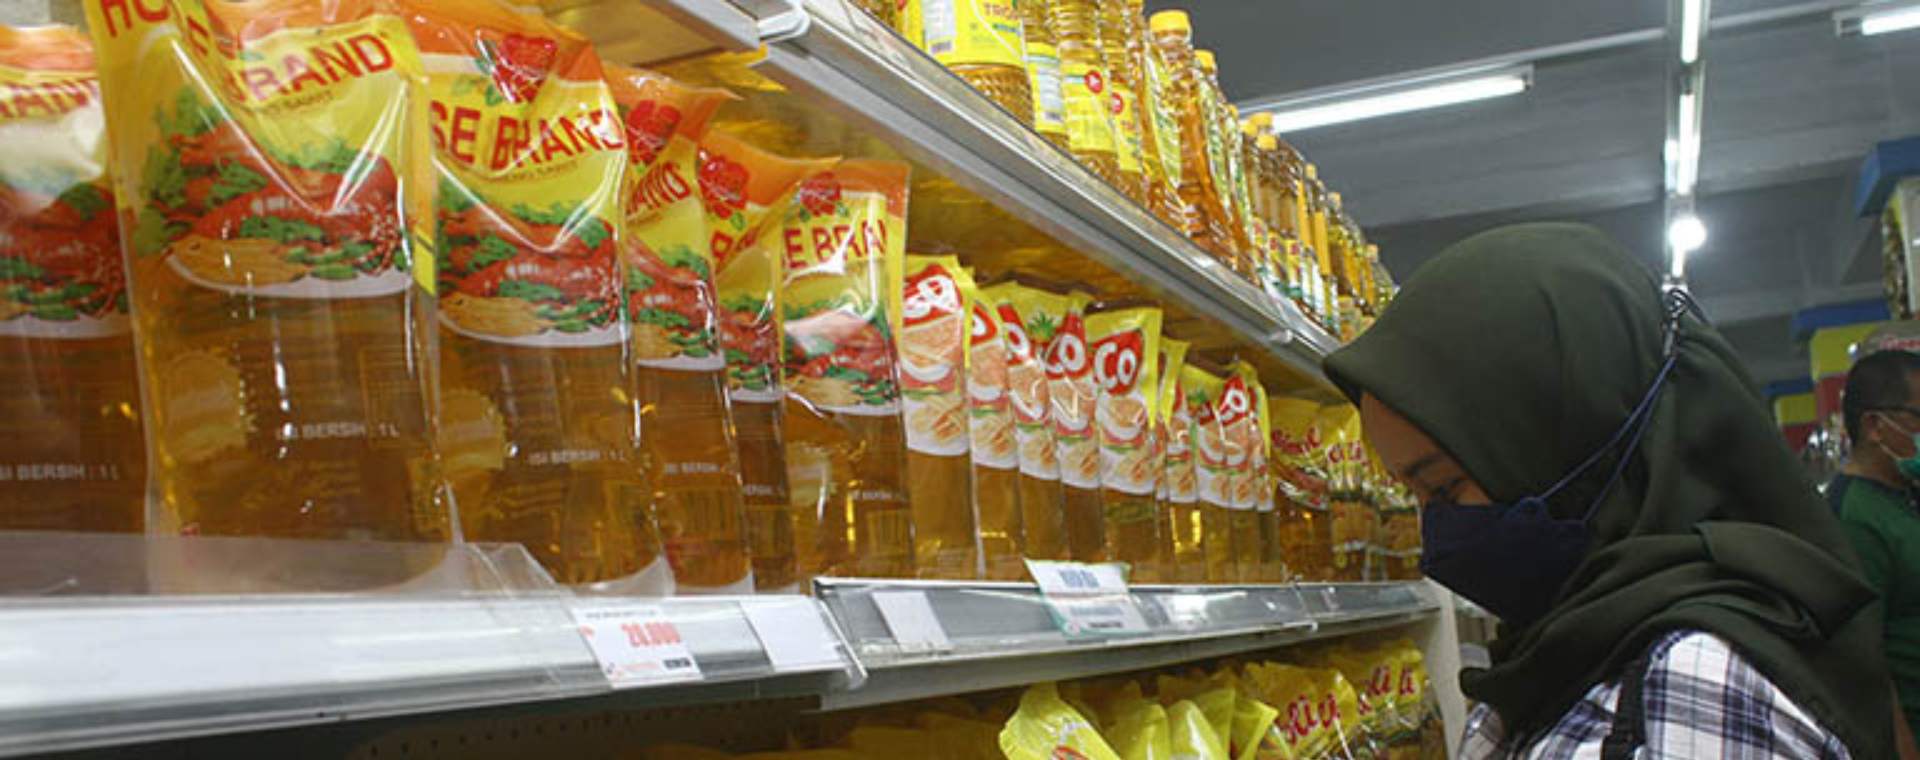 Seorang pengunjung memilih minyak goreng yang dijual di supermarket di Pontianak, Kalimantan Barat, Kamis (23/12/2021). - Antara Foto/Jessica Helena Wuysang